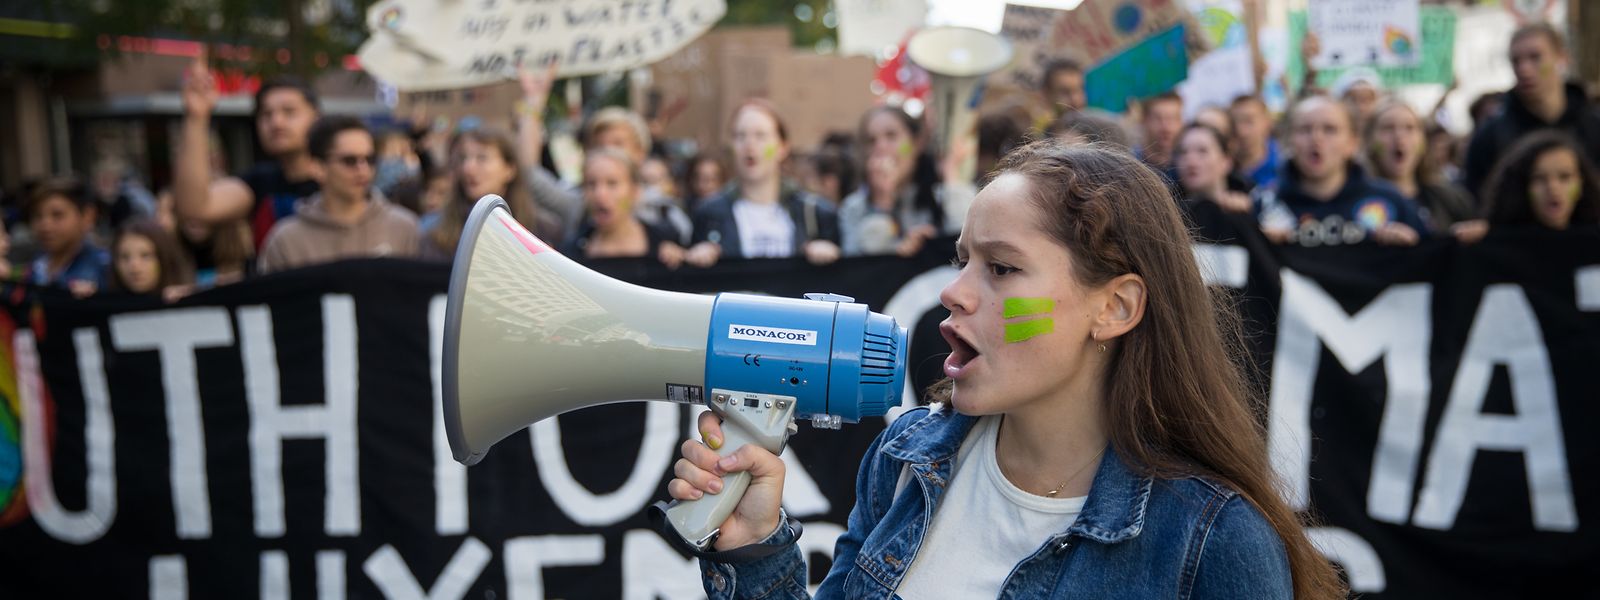 Die Mitglieder der Jugendbewegung "Youth for Climate Luxembourg" führten am Freitag den Schülermarsch an.